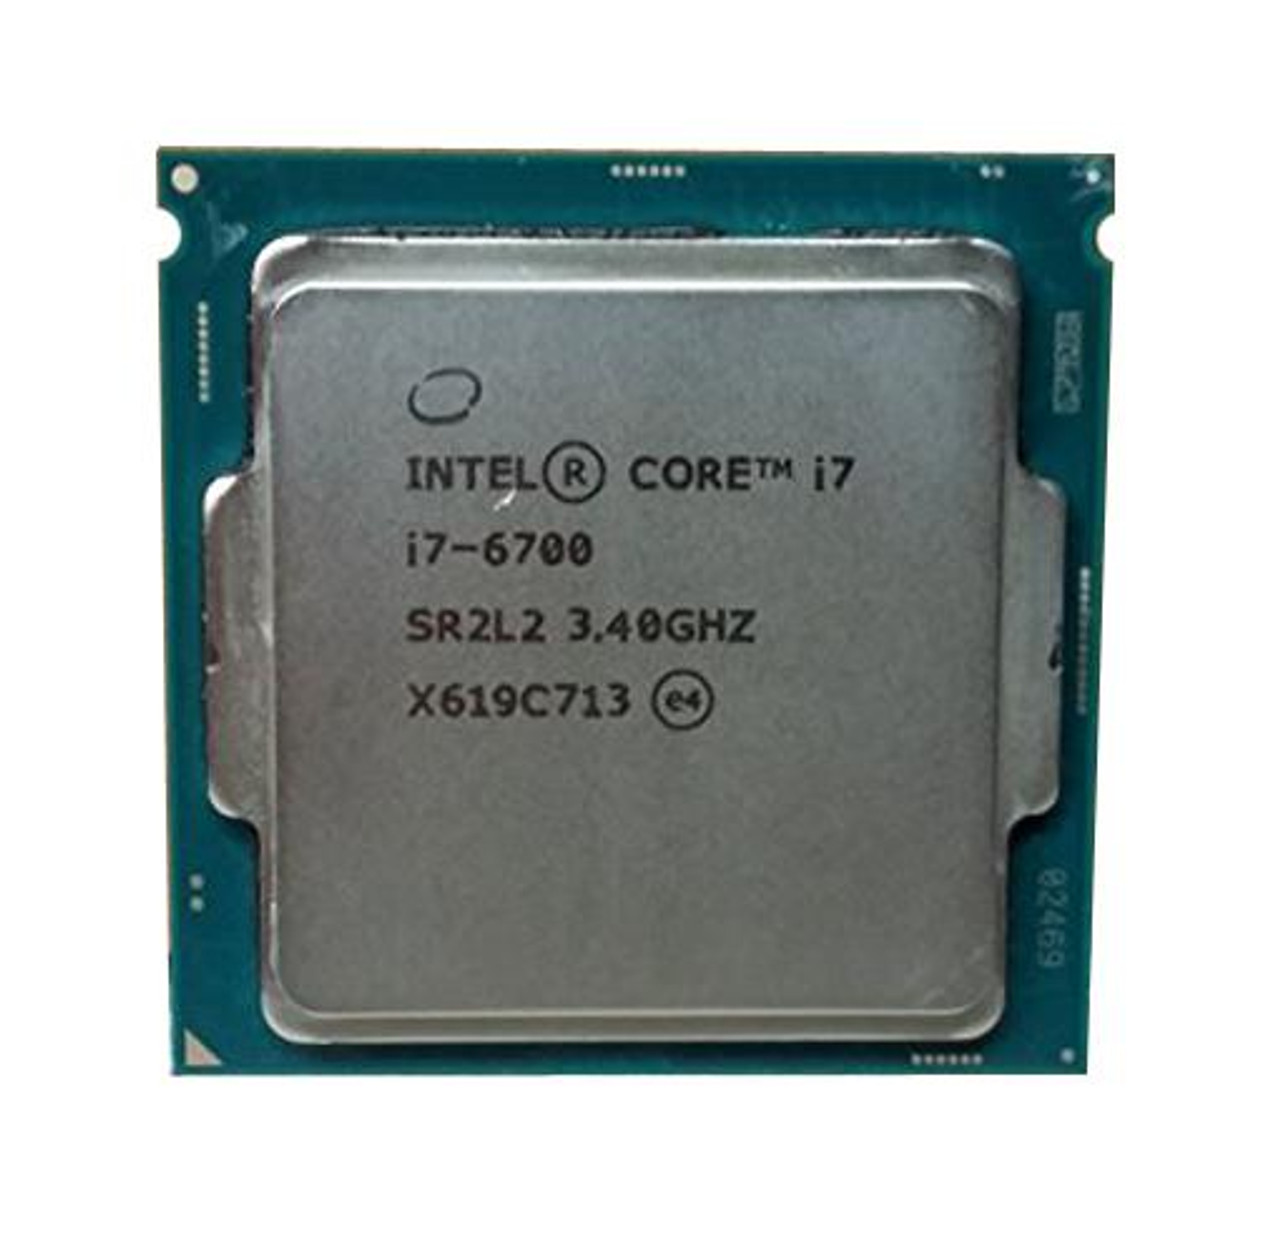 Dell 3.40GHz 8.00GT/s DMI3 8MB L3 Cache Intel Core i7-6700 Quad-Core Processor Upgrade